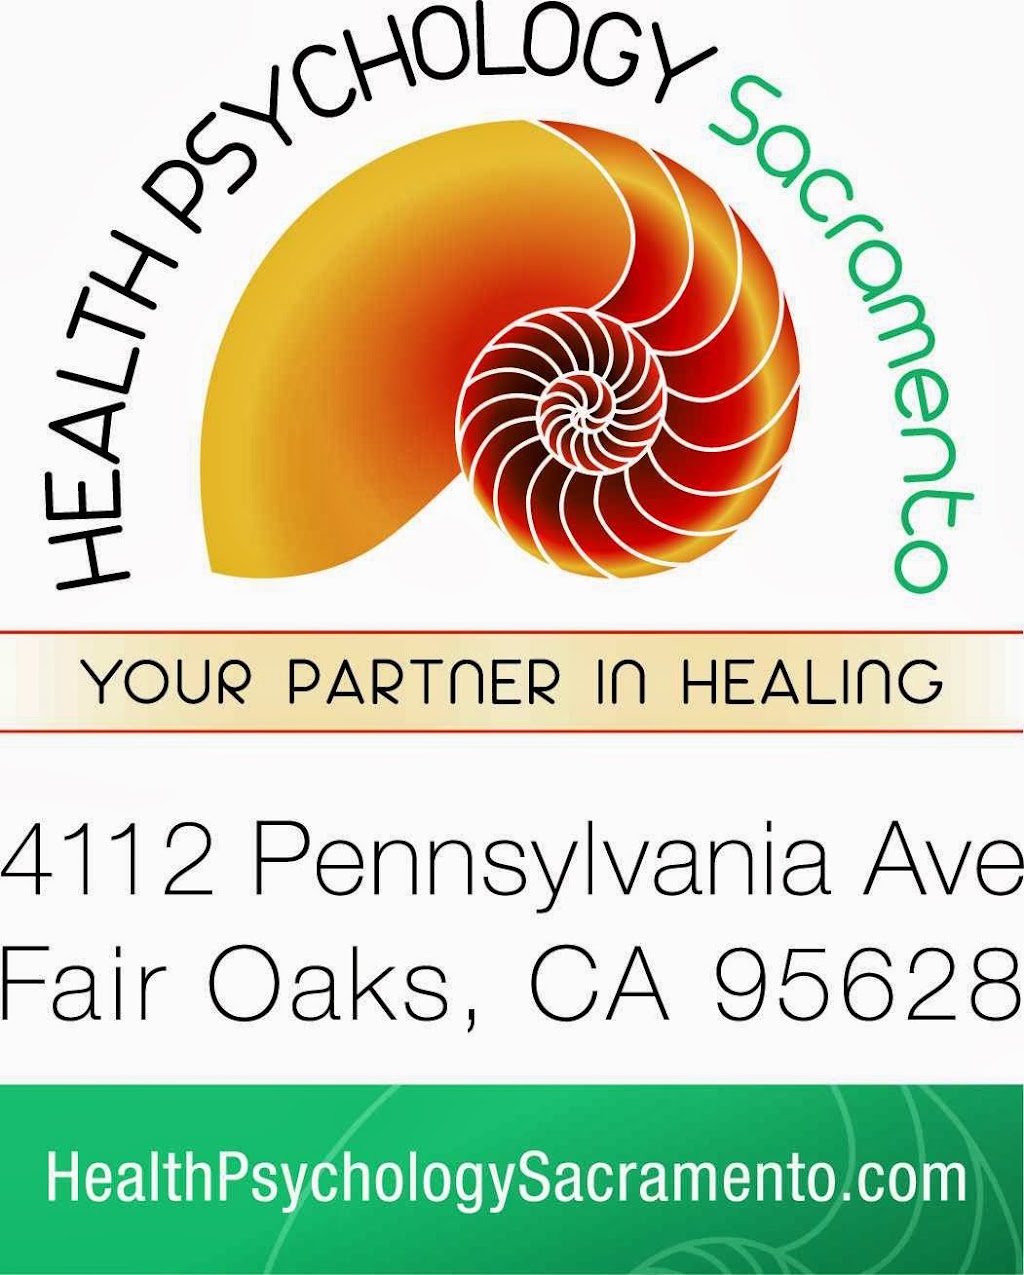 Health Psychology Sacramento | 4112 Pennsylvania Ave, Fair Oaks, CA 95628, USA | Phone: (916) 962-0222